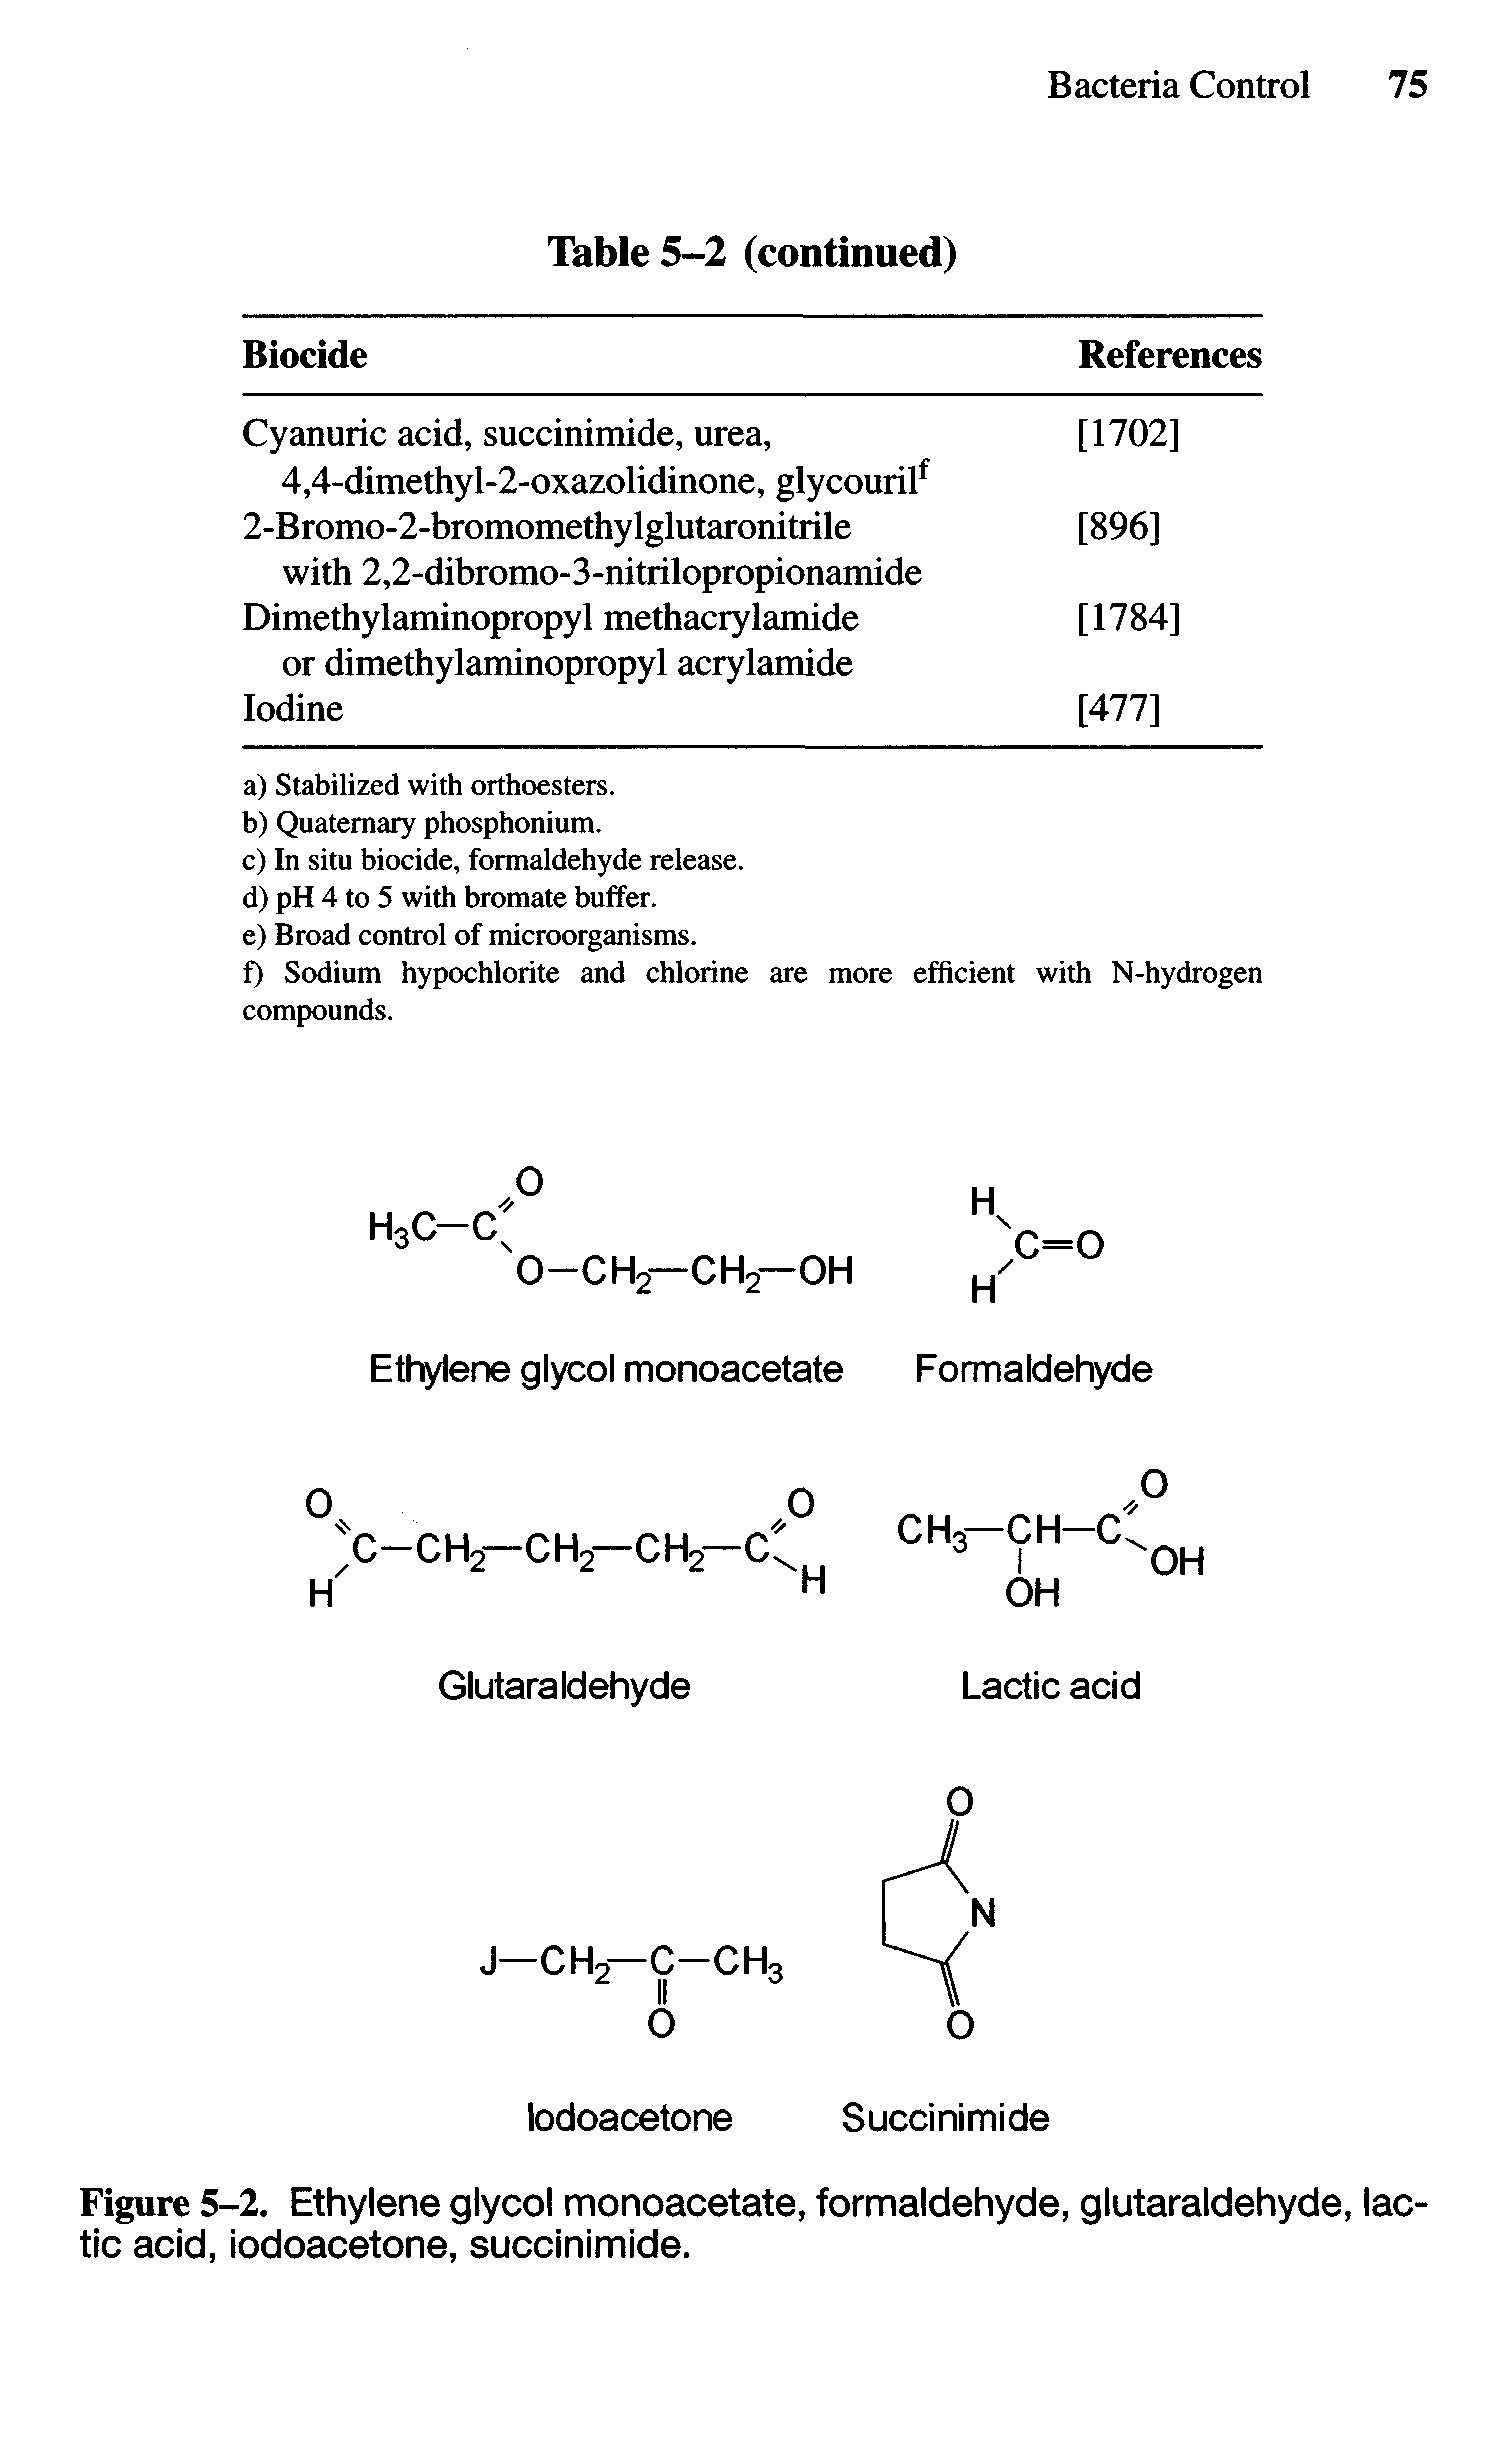 Figure 5-2. Ethylene glycol monoacetate, formaldehyde, glutaraldehyde, lactic acid, iodoacetone, succinimide.